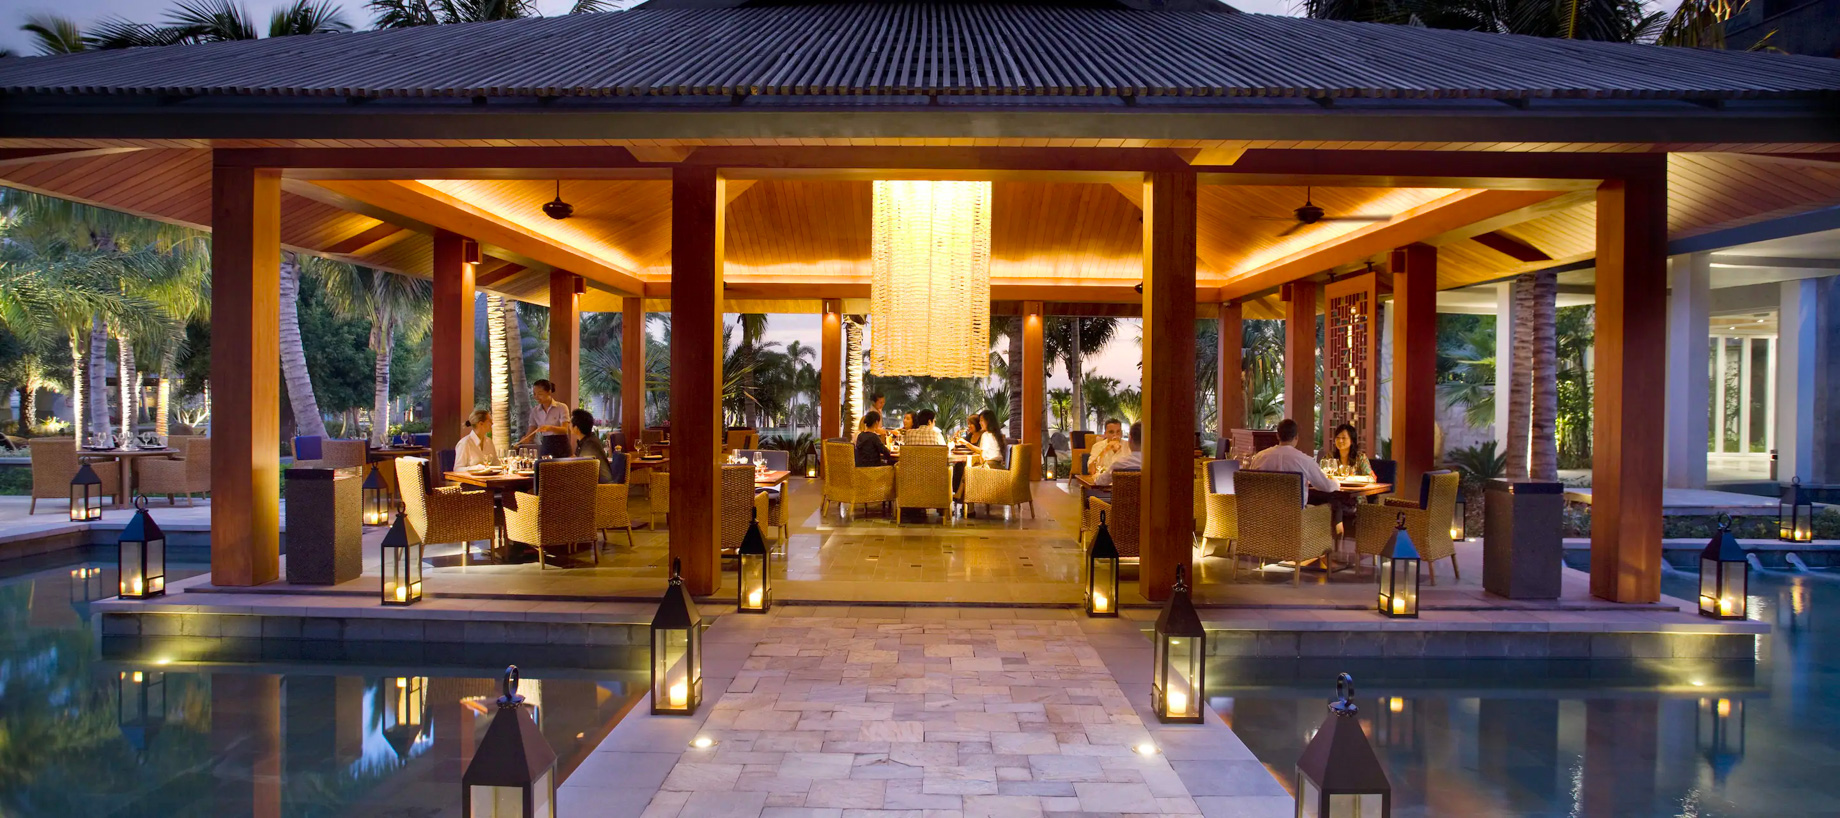 Mandarin Oriental, Sanya Hotel - Hainan, China - Pavilion Restaurant